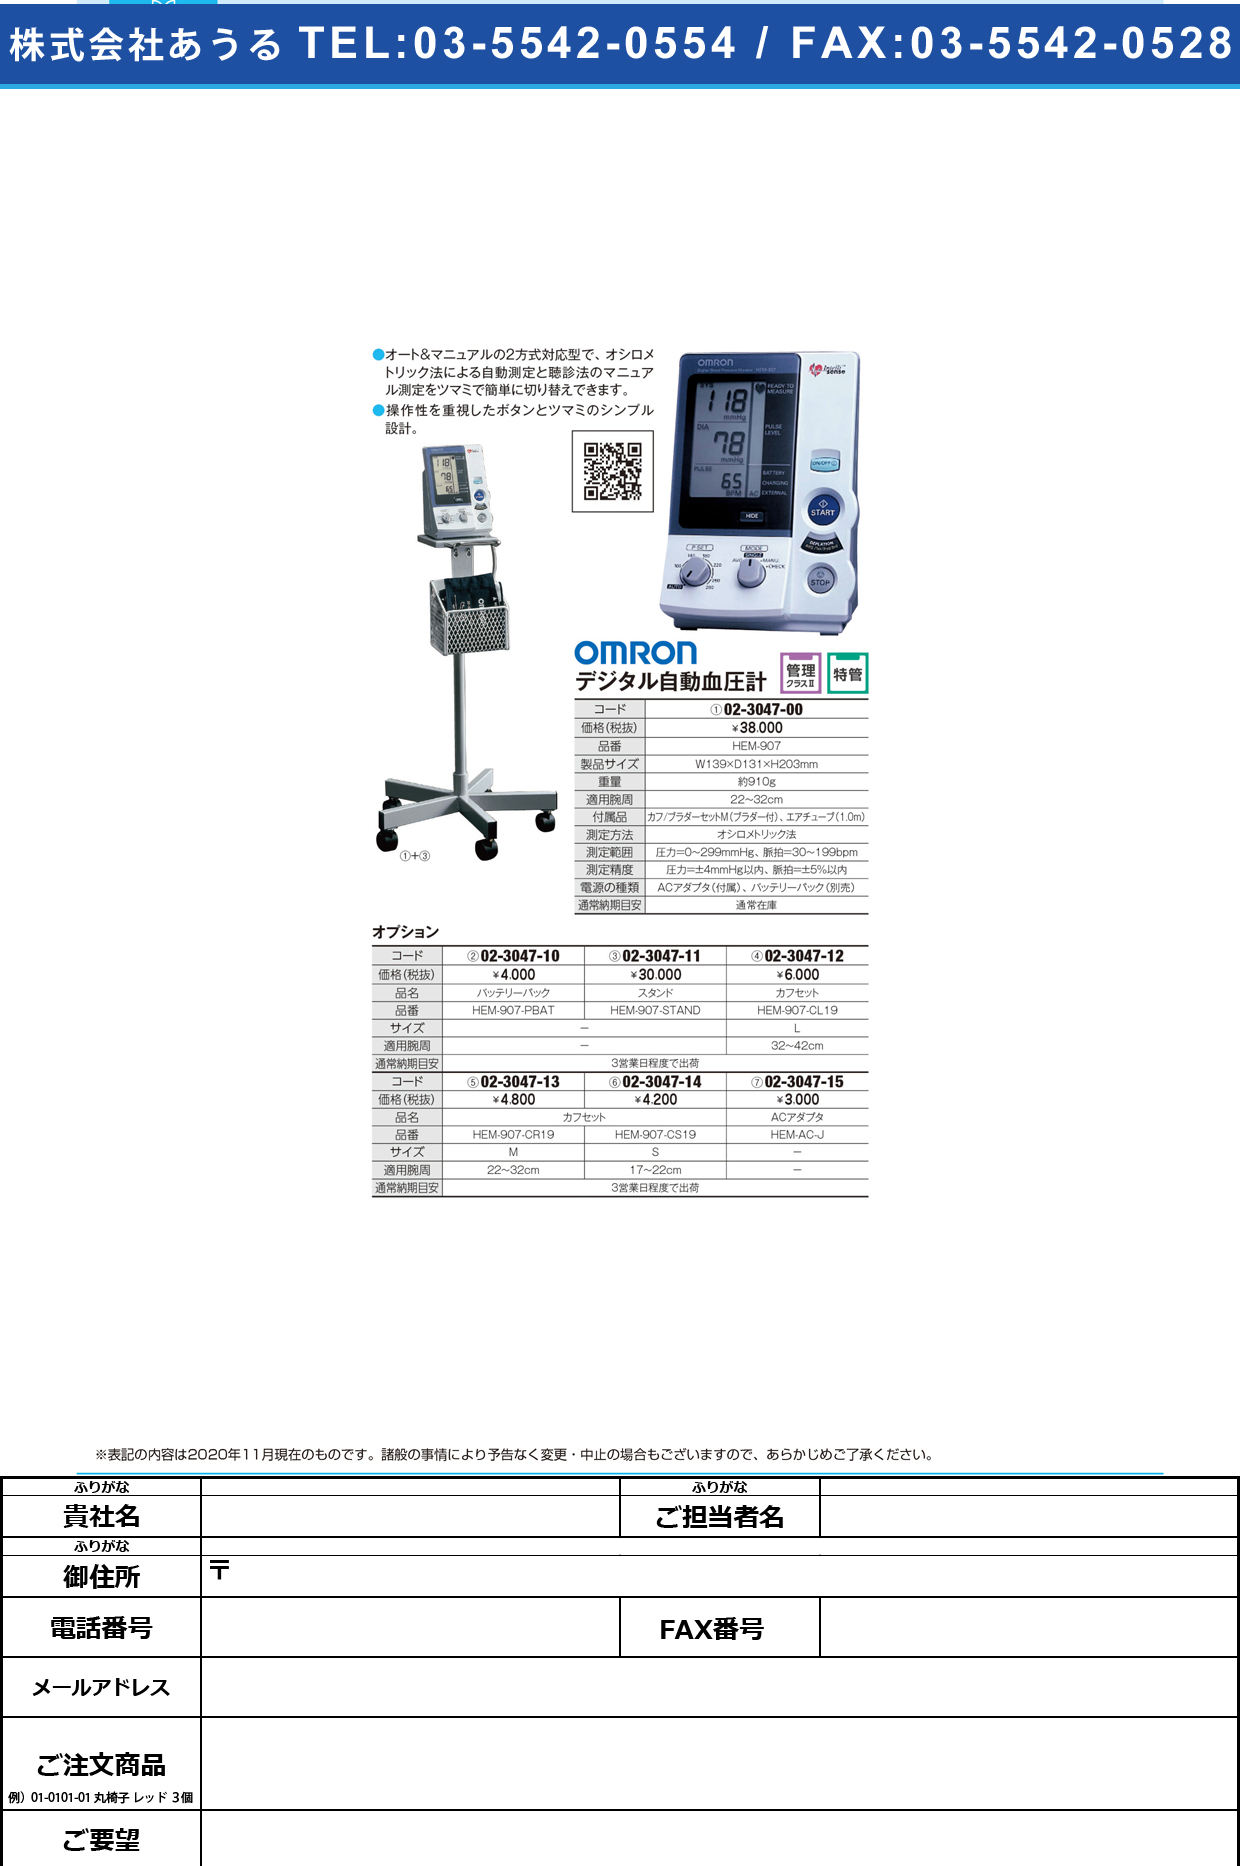 血圧計用カフ／ブラダーセット(S) HEM-907-CS19HEM-907-CS19(02-3047-14)【フクダコーリン】(販売単位:1)